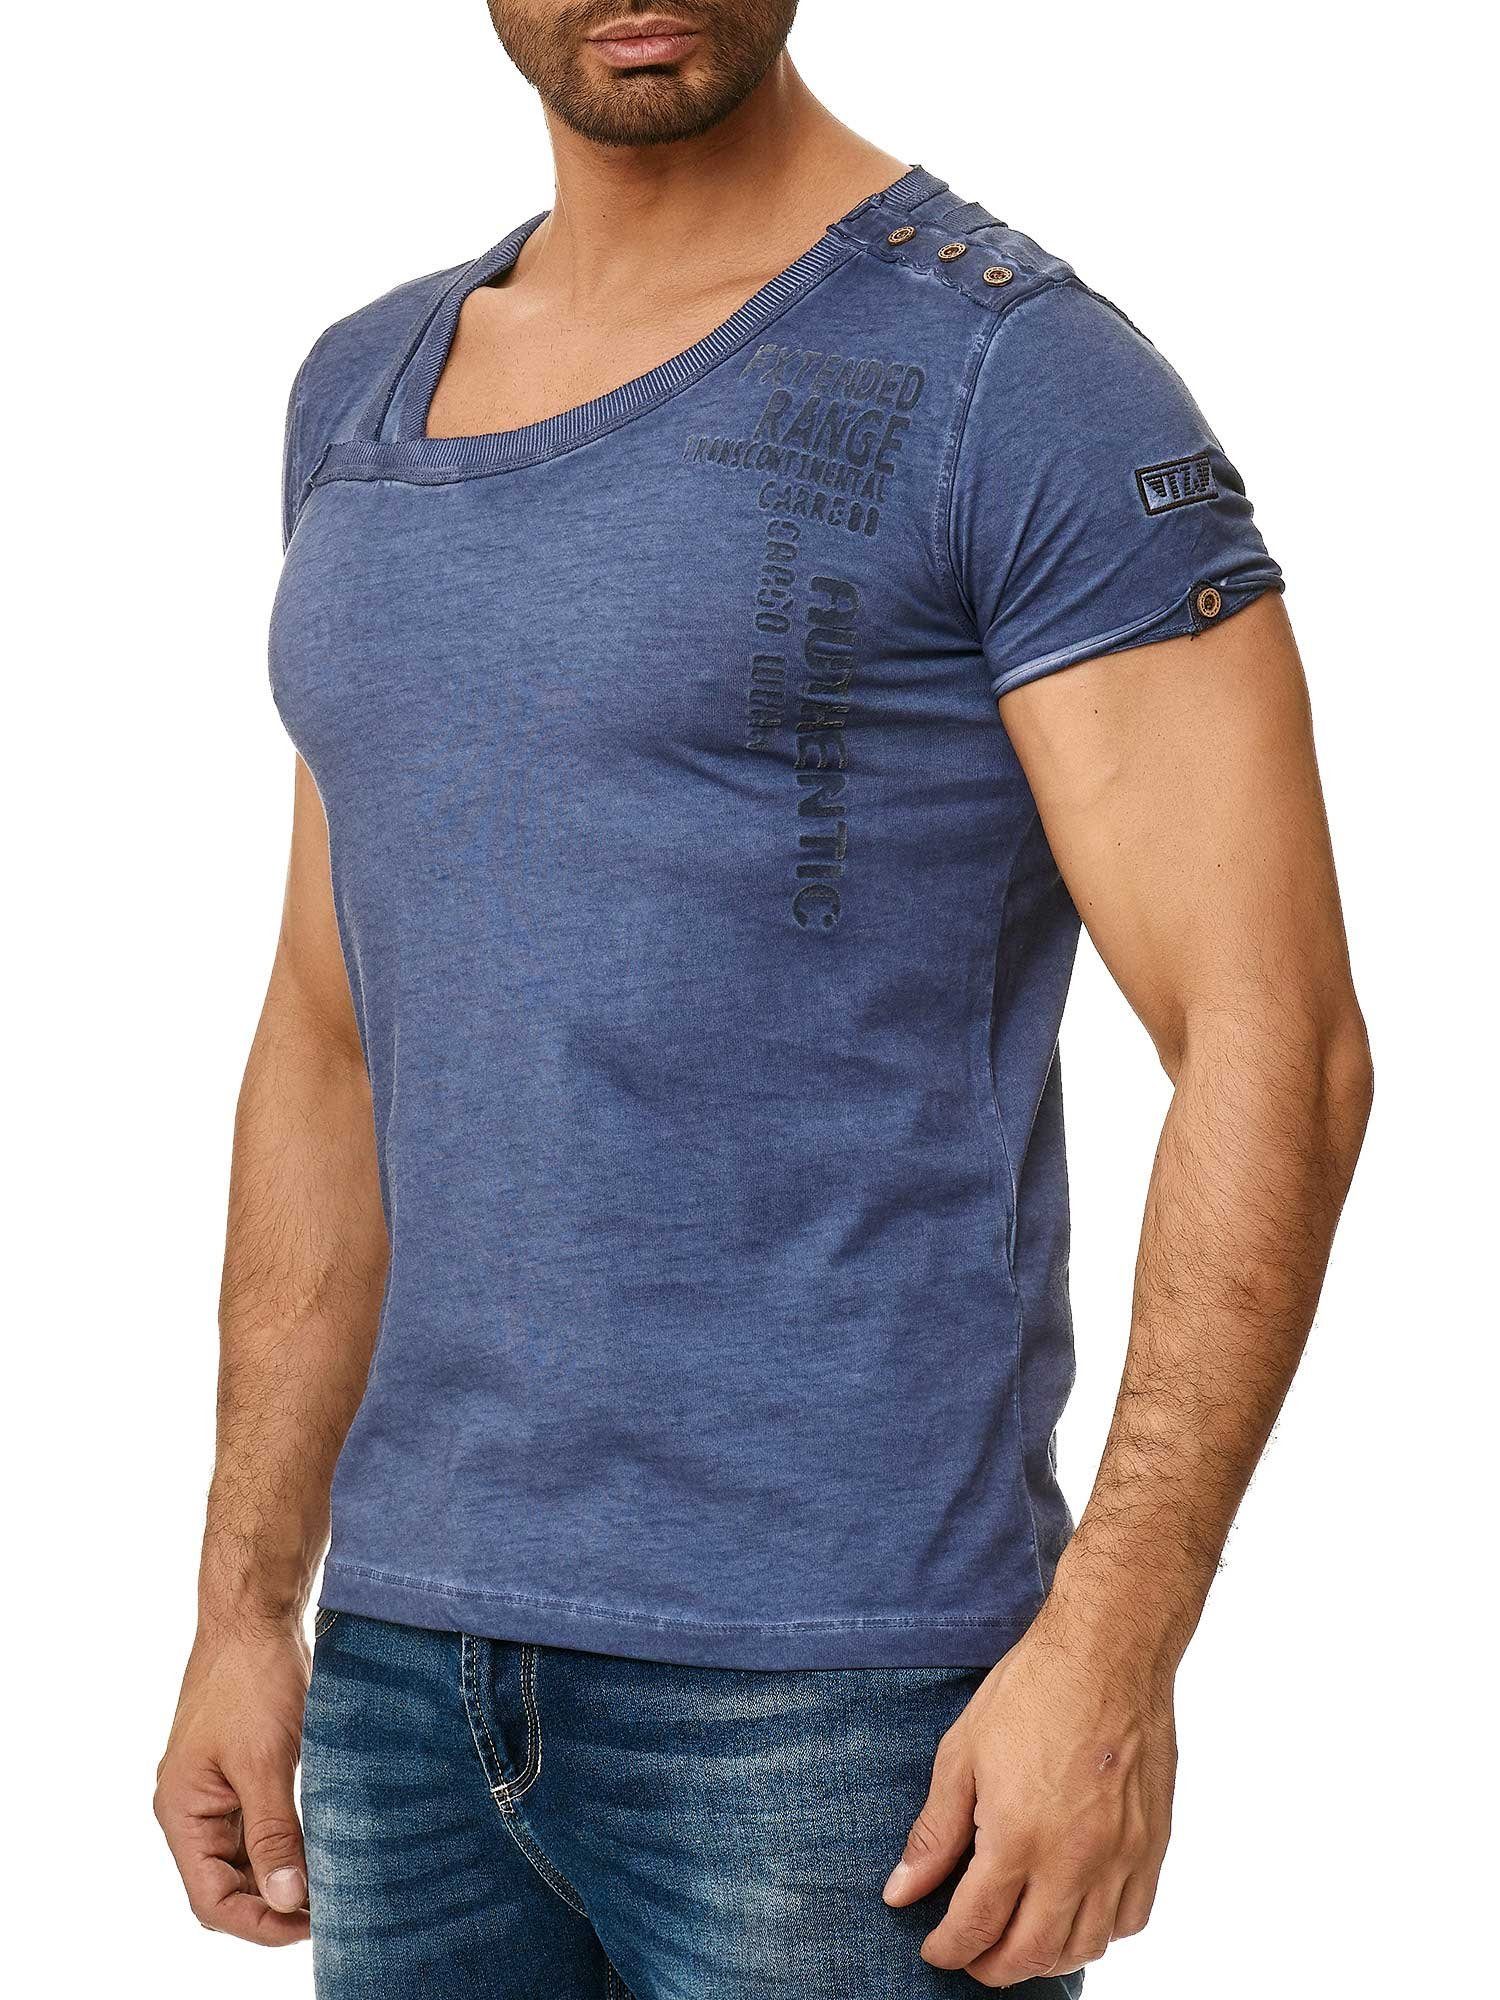 Tazzio T-Shirt 4022 in trendiger Ölwaschung mit stylischem Kragen und Knopfleiste an der Schulter navy